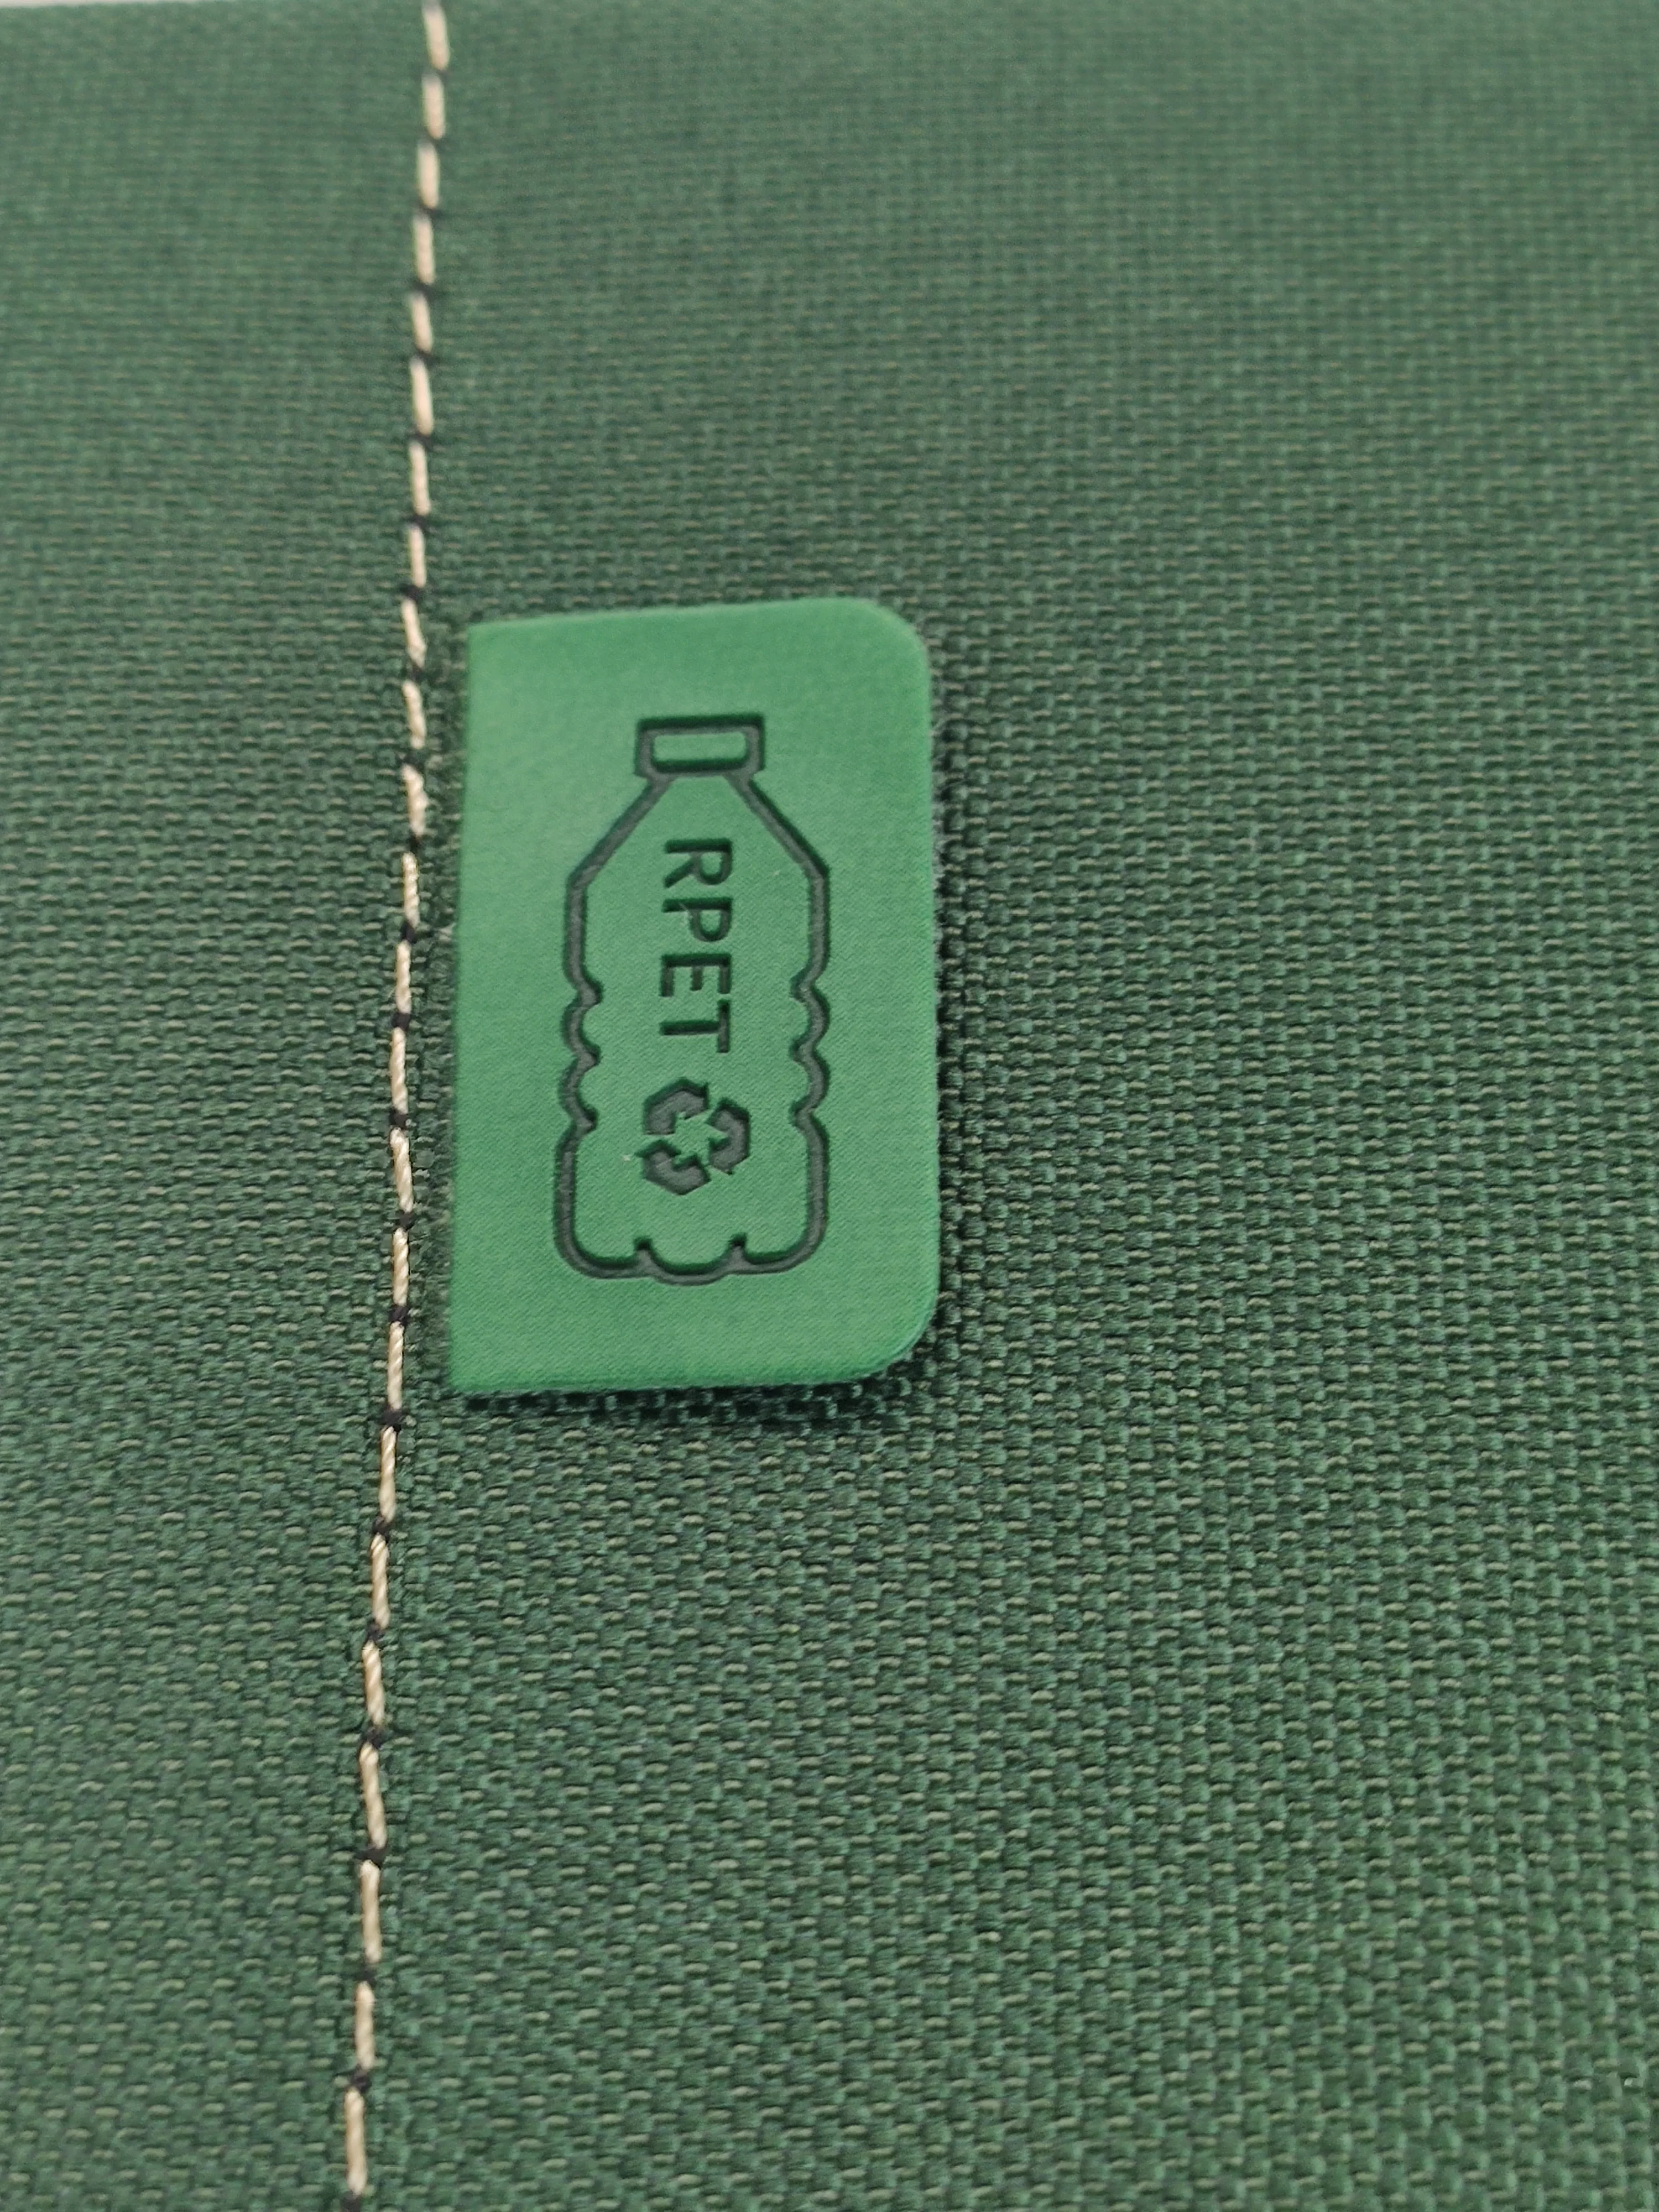 Etiqueta que certifica la producción mediante un material ecológico y sostenible: plastico reutilizado. Cuadernos de la marca Didex. 